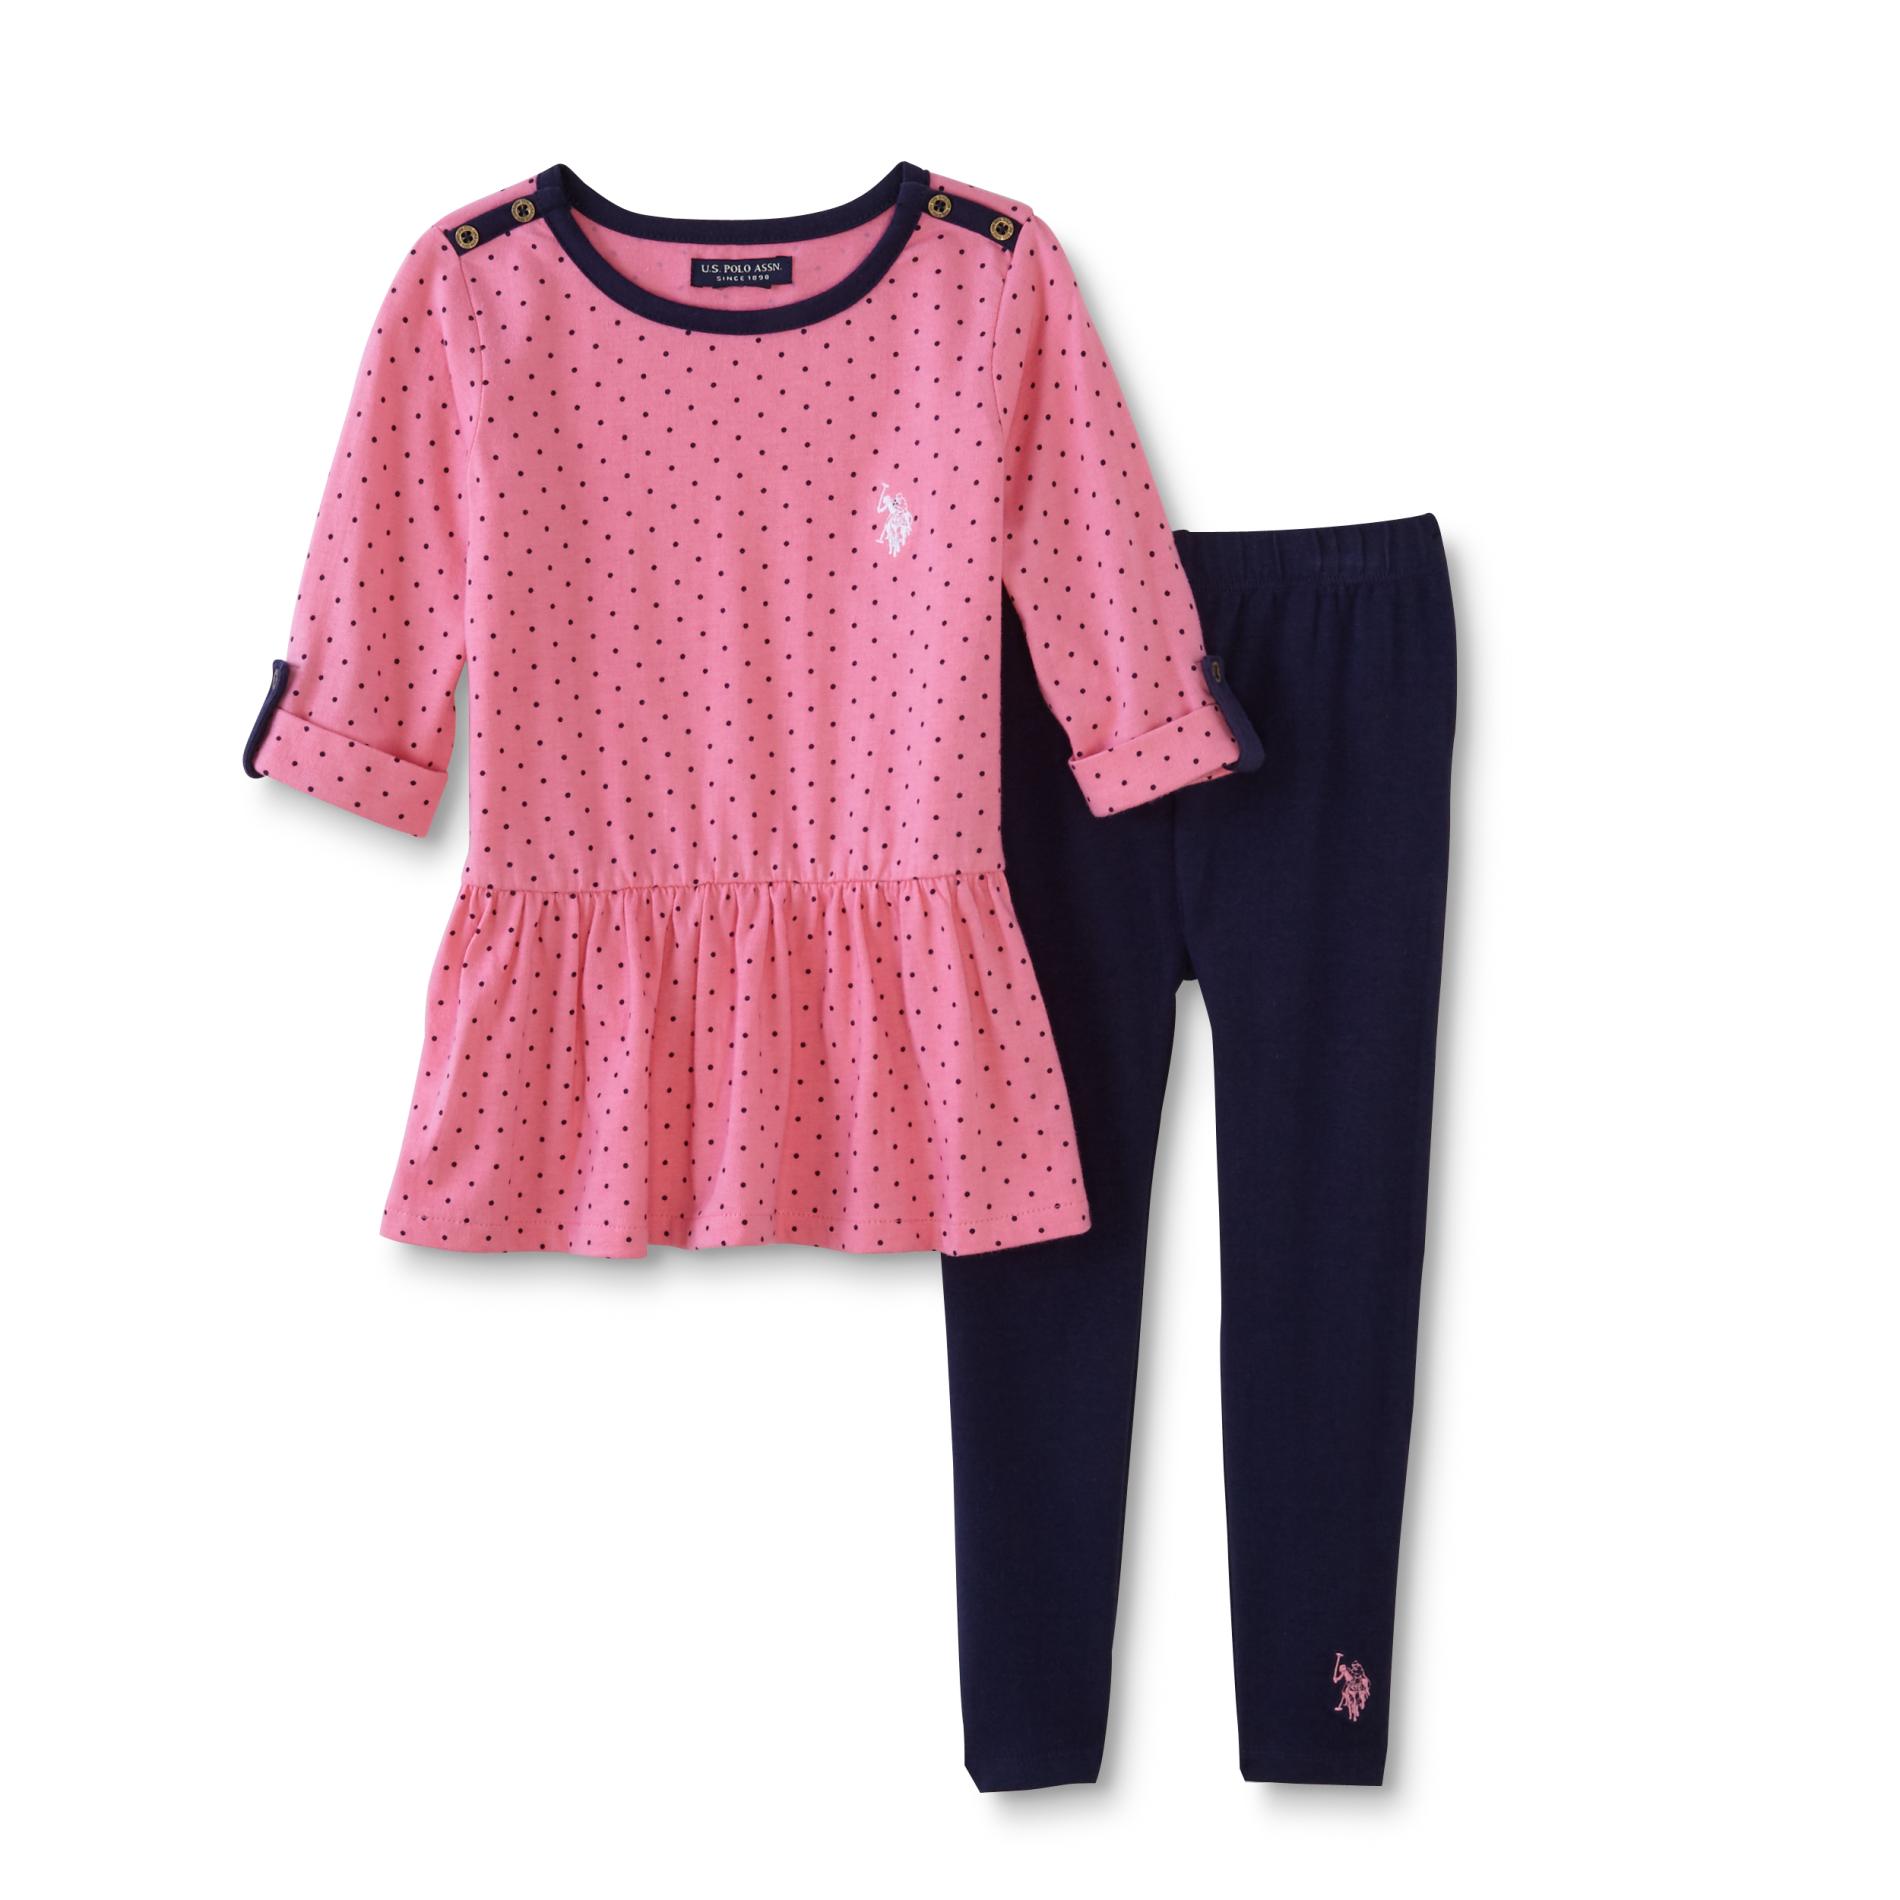 U.S. Polo Assn. Infant & Toddler Girls' Dress & Leggings - Polka Dot